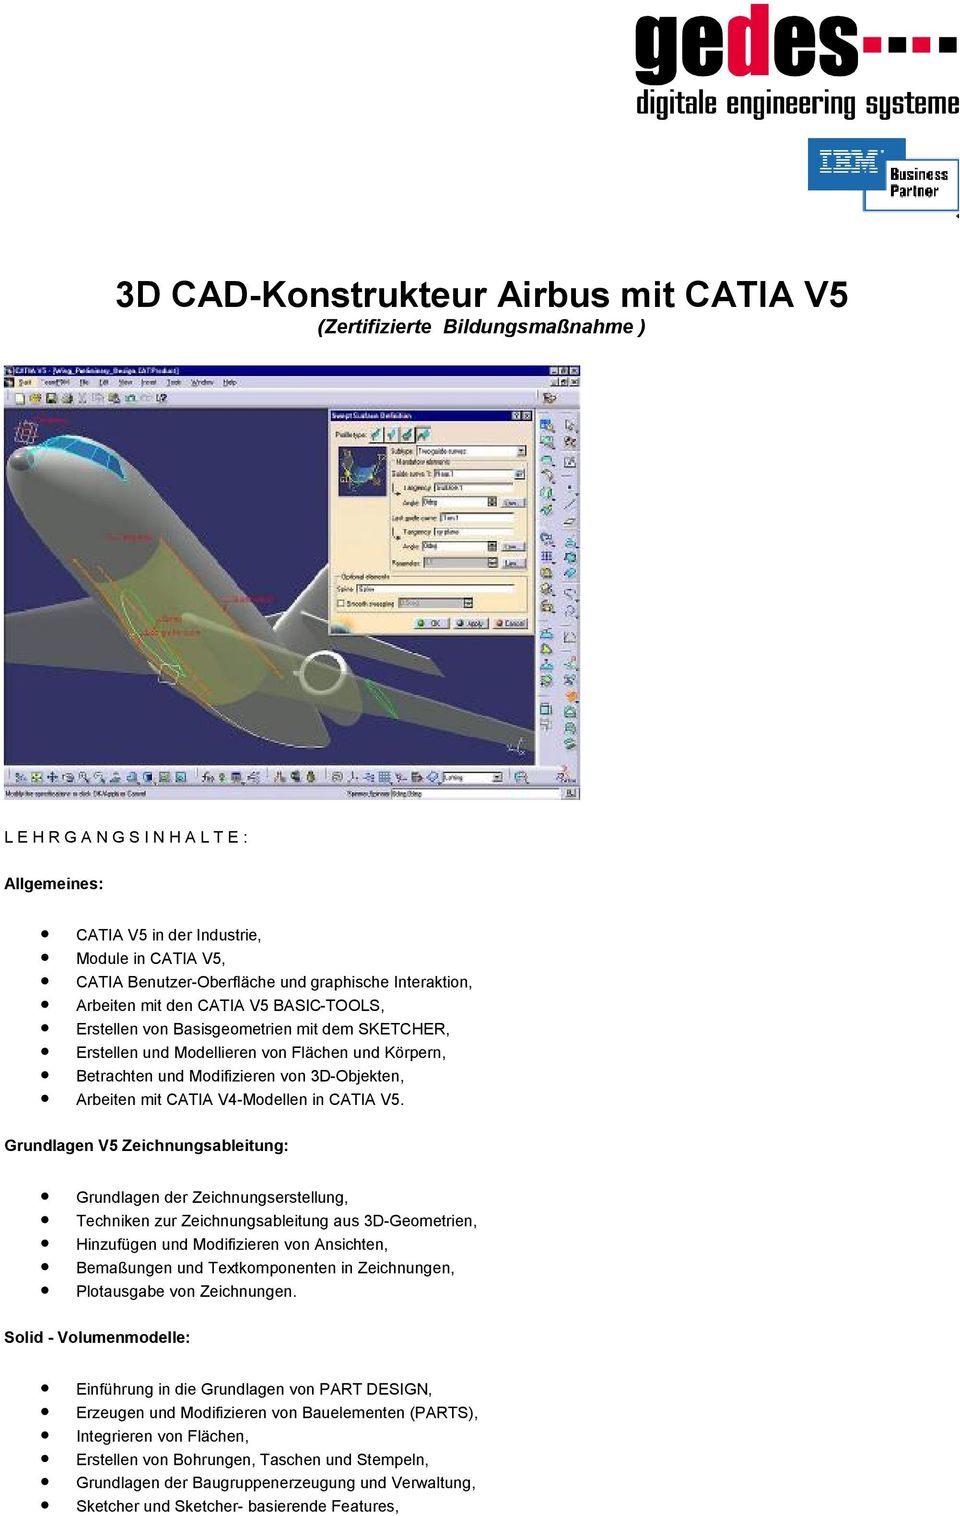 3D-Objekten, Arbeiten mit CATIA V4-Modellen in CATIA V5.